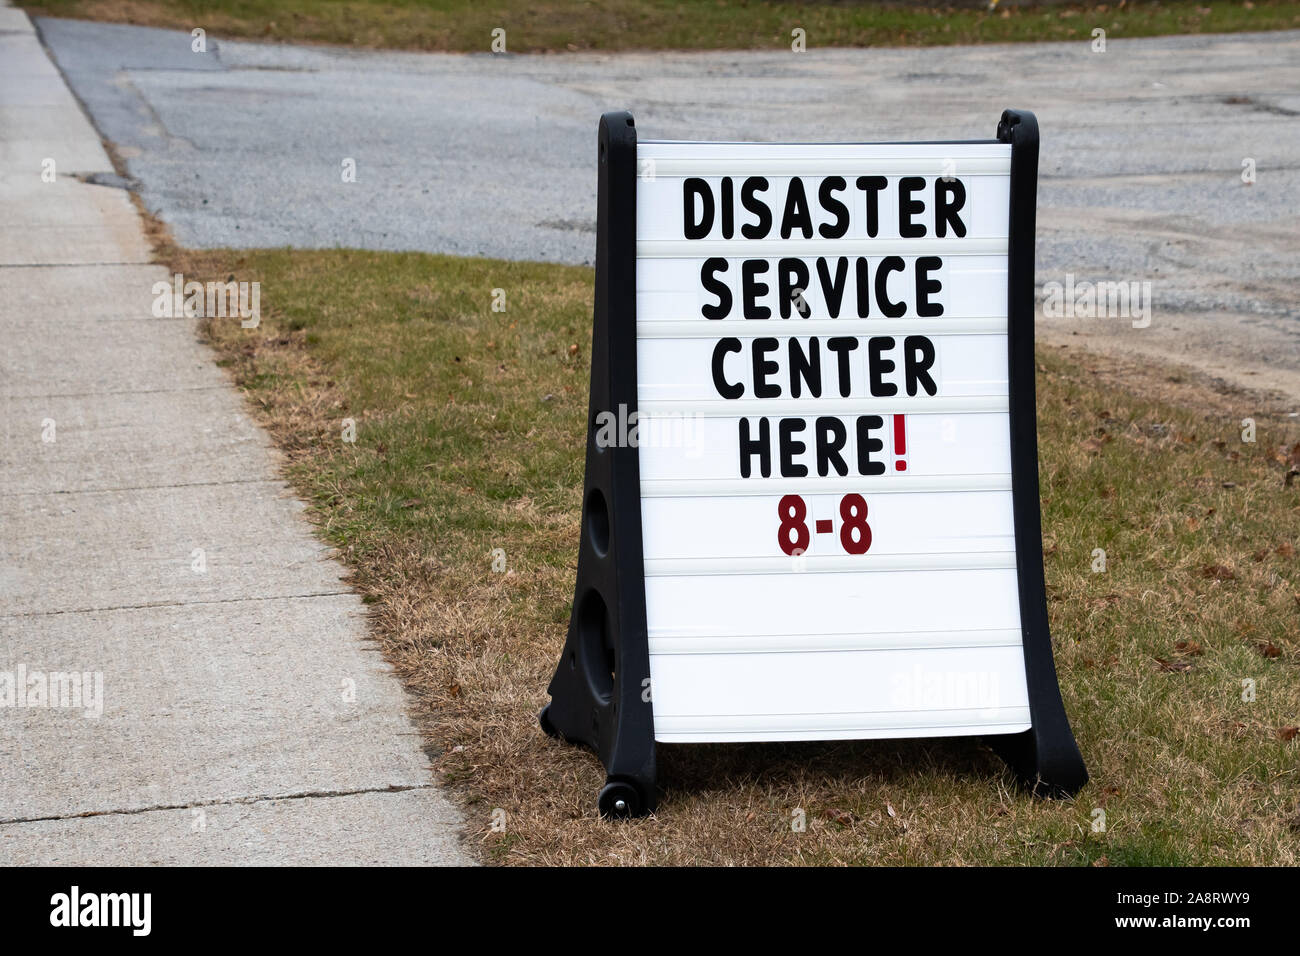 Eine Katastrophe Service Center anmelden Spekulant, NY USA nach schweren Überschwemmungen von einem großen Regen Sturm auf Halloween. Stockfoto